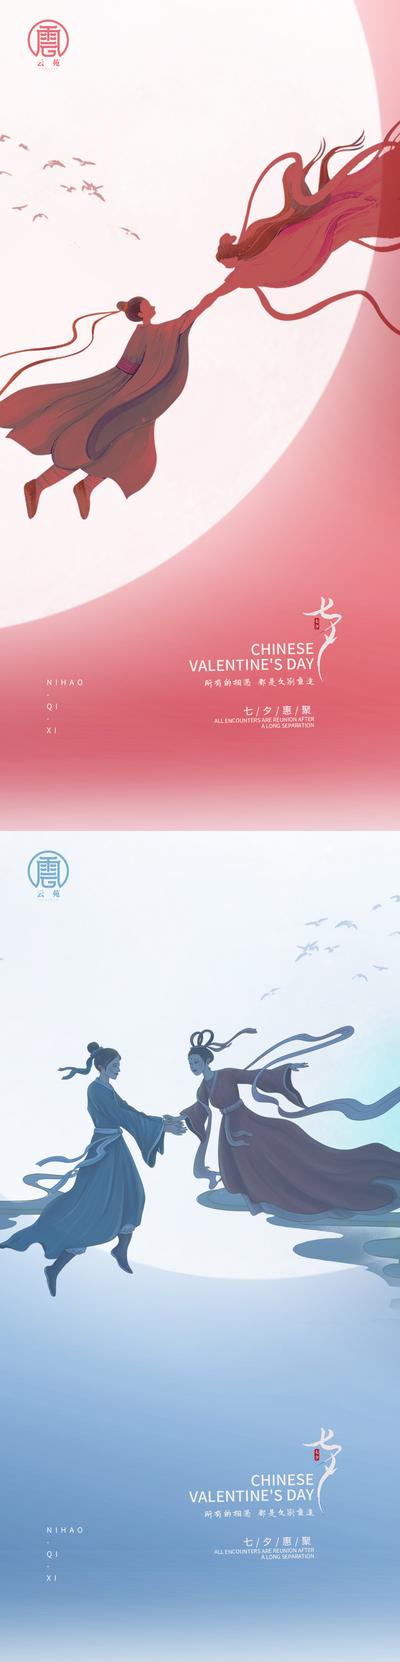 【南门网】海报 中国传统节日 七夕 情人节 牛郎织女 鹊桥 系列